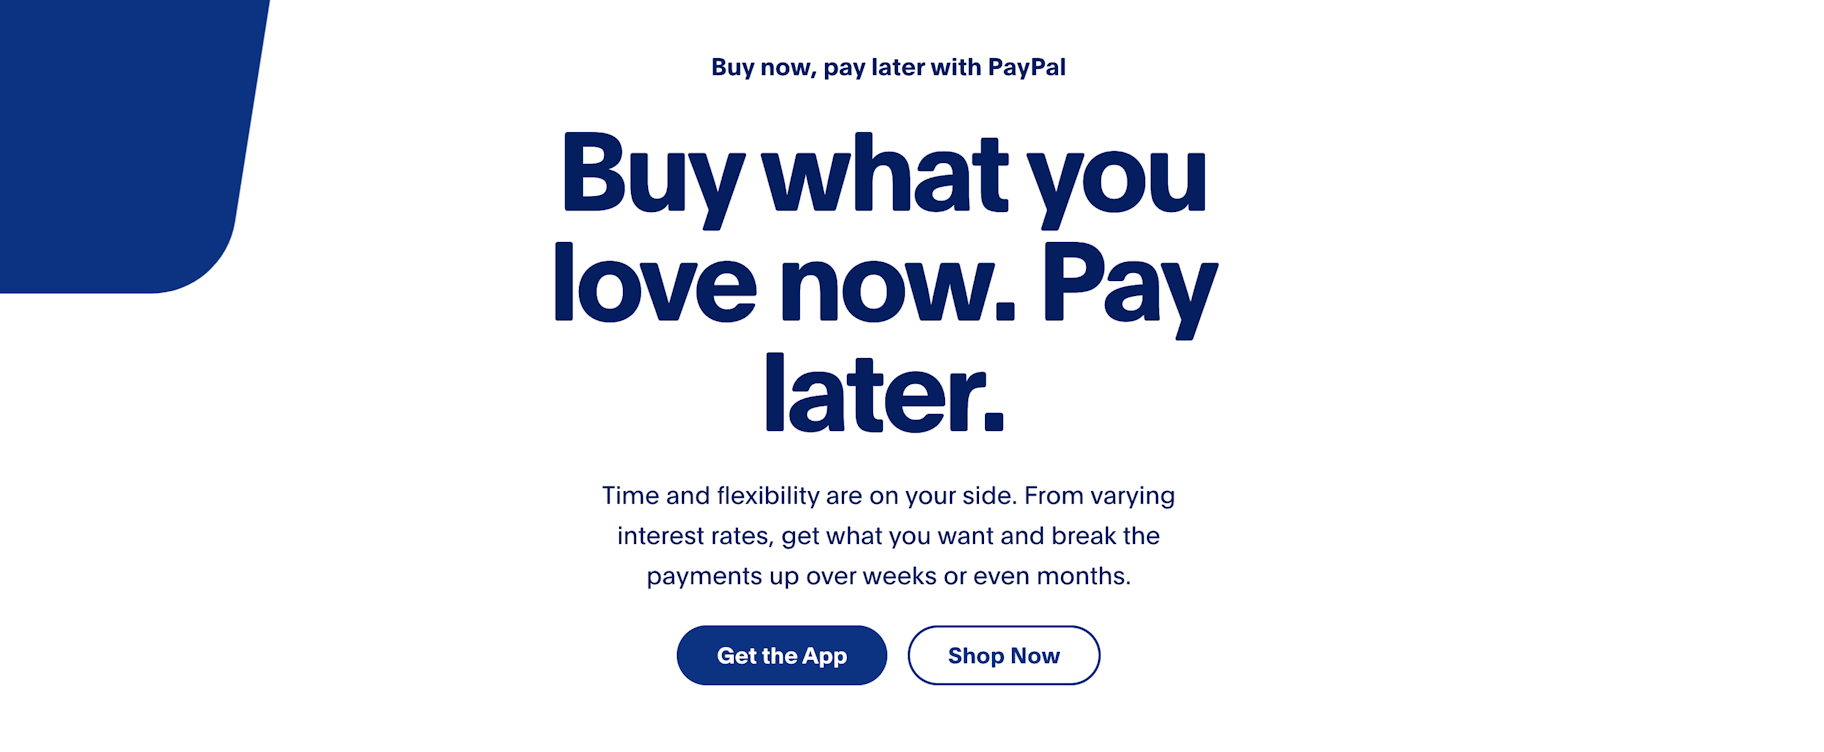 Compre ahora, pague después el servicio de PayPal